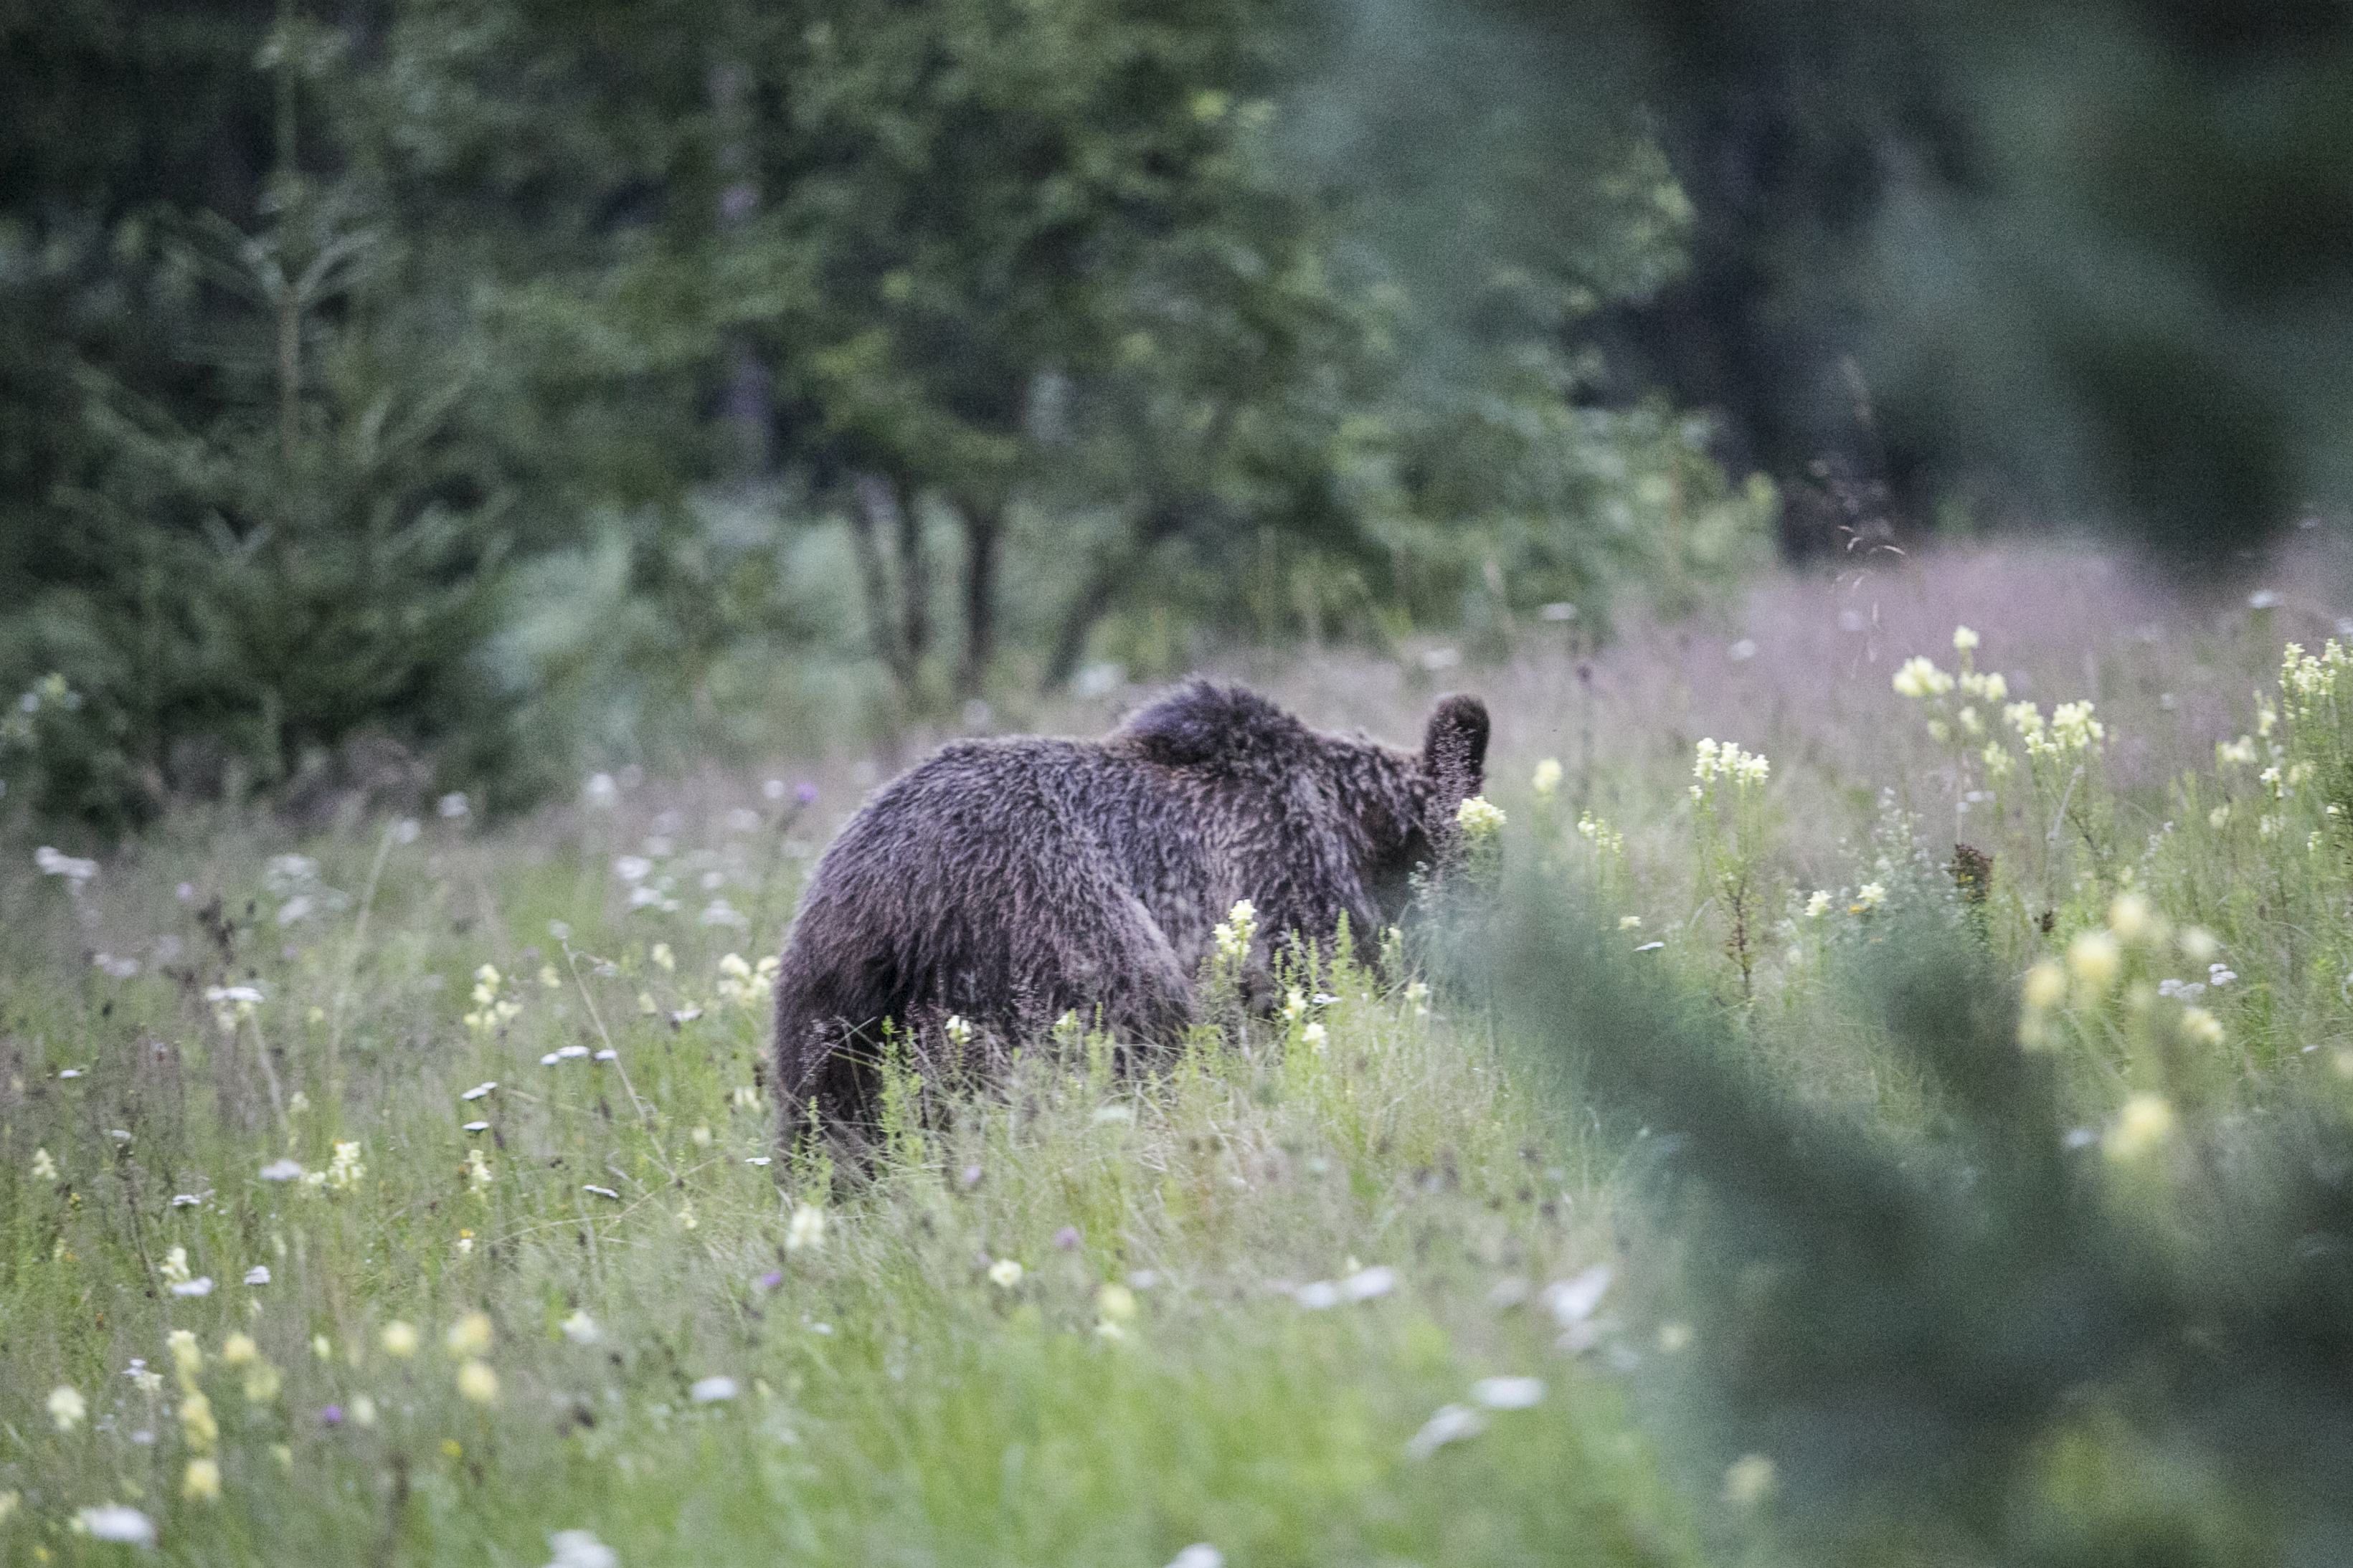 Tusnádfürdői támadás: „A medve gyakorlatilag kiharapott egy darabot a bal mellkasából”